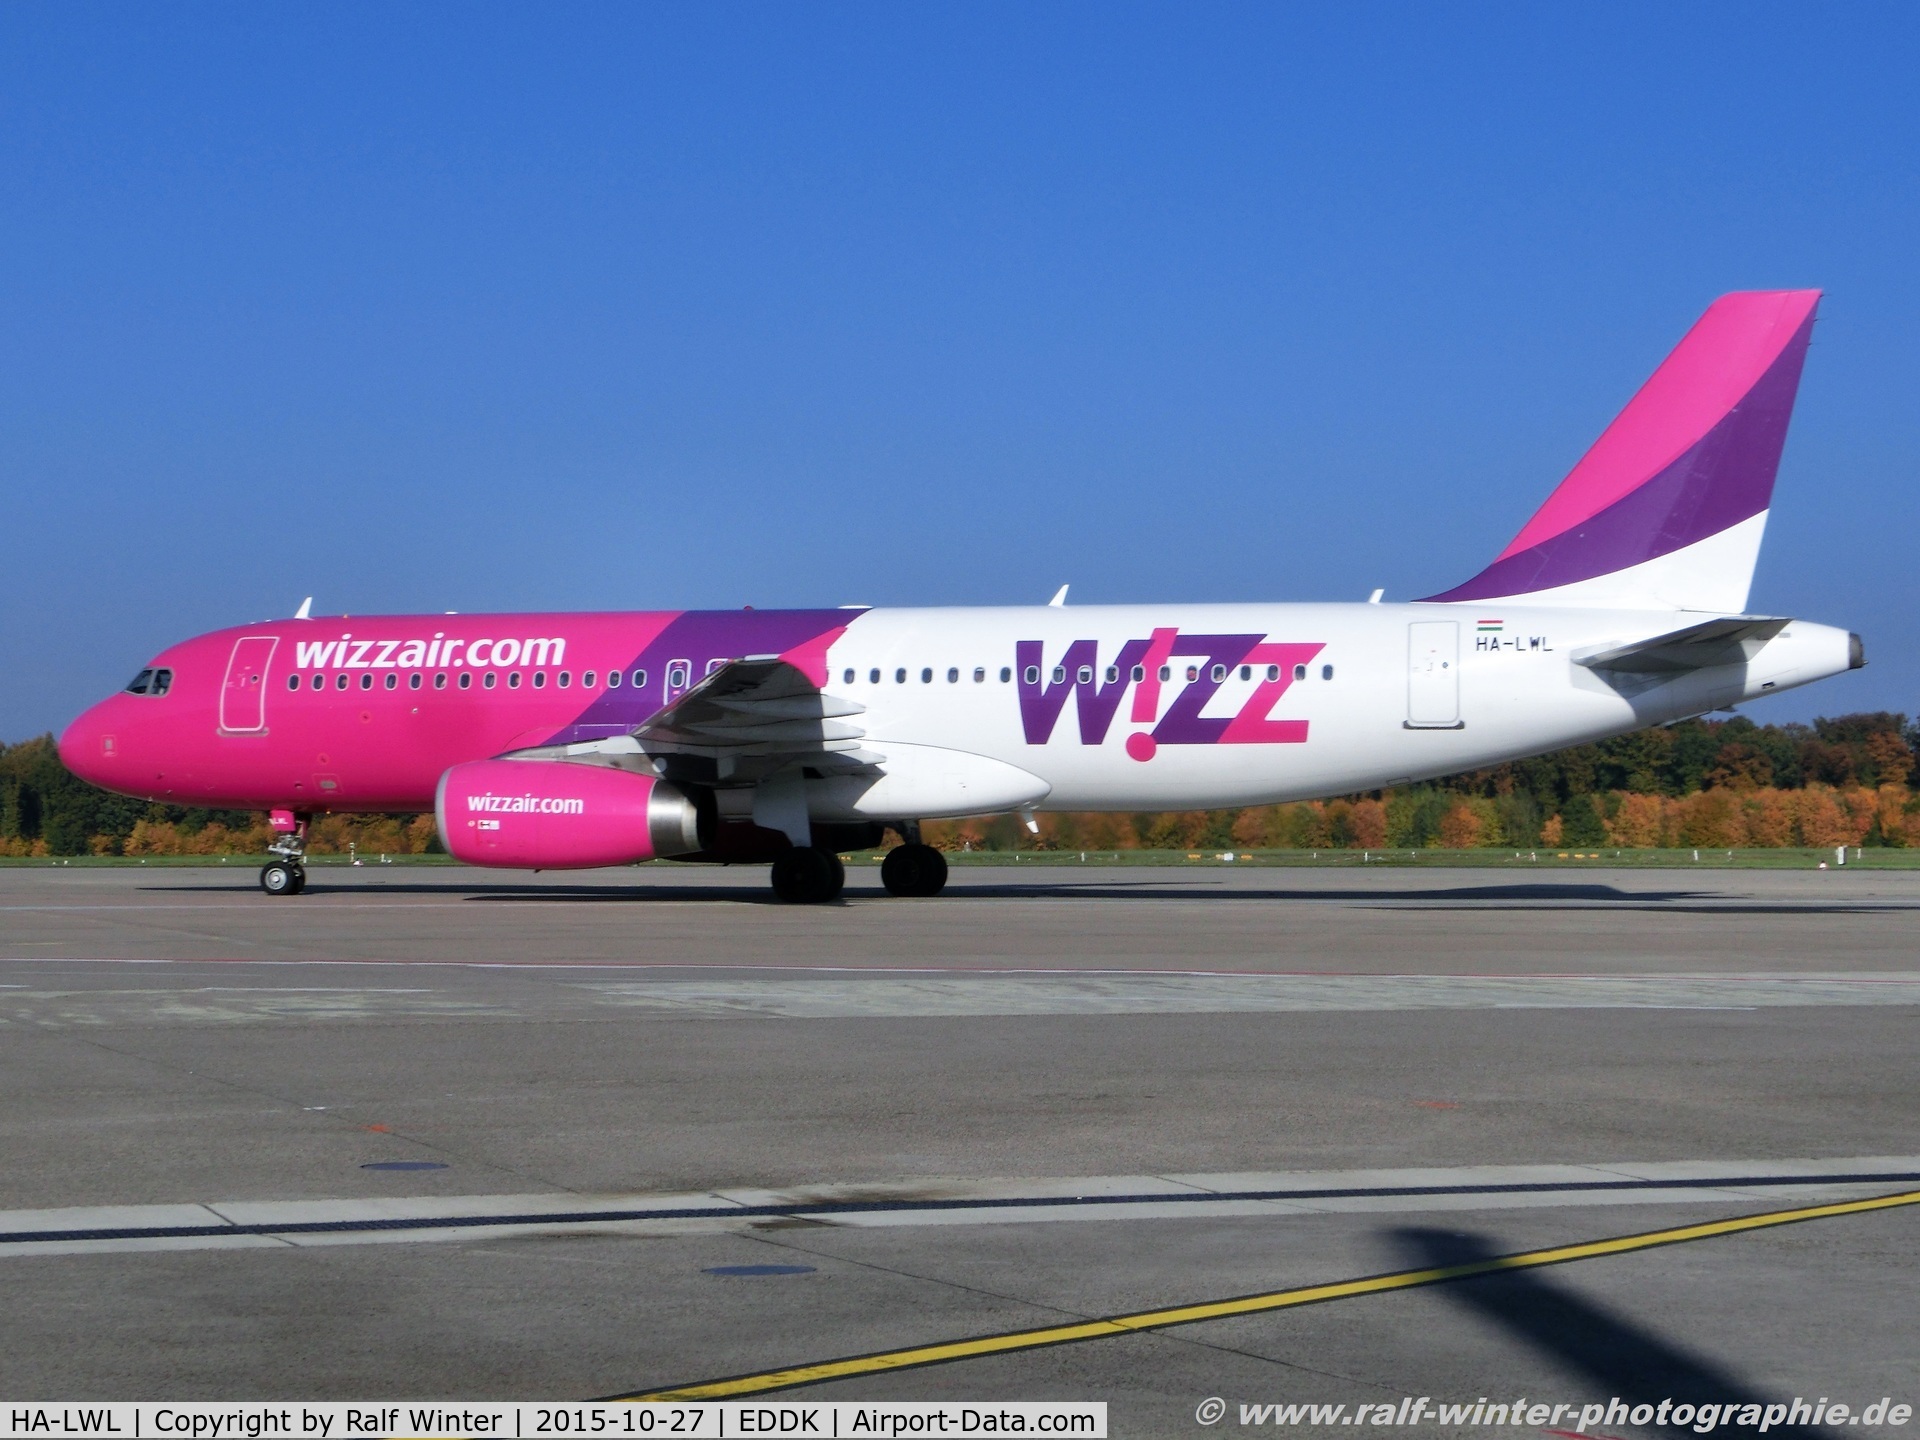 HA-LWL, 2011 Airbus A320-232 C/N 4736, Airbus A320-232 - W6 WZZ Wizz Air - 4736 - HA-LWL - 27.10.2015 - CGN